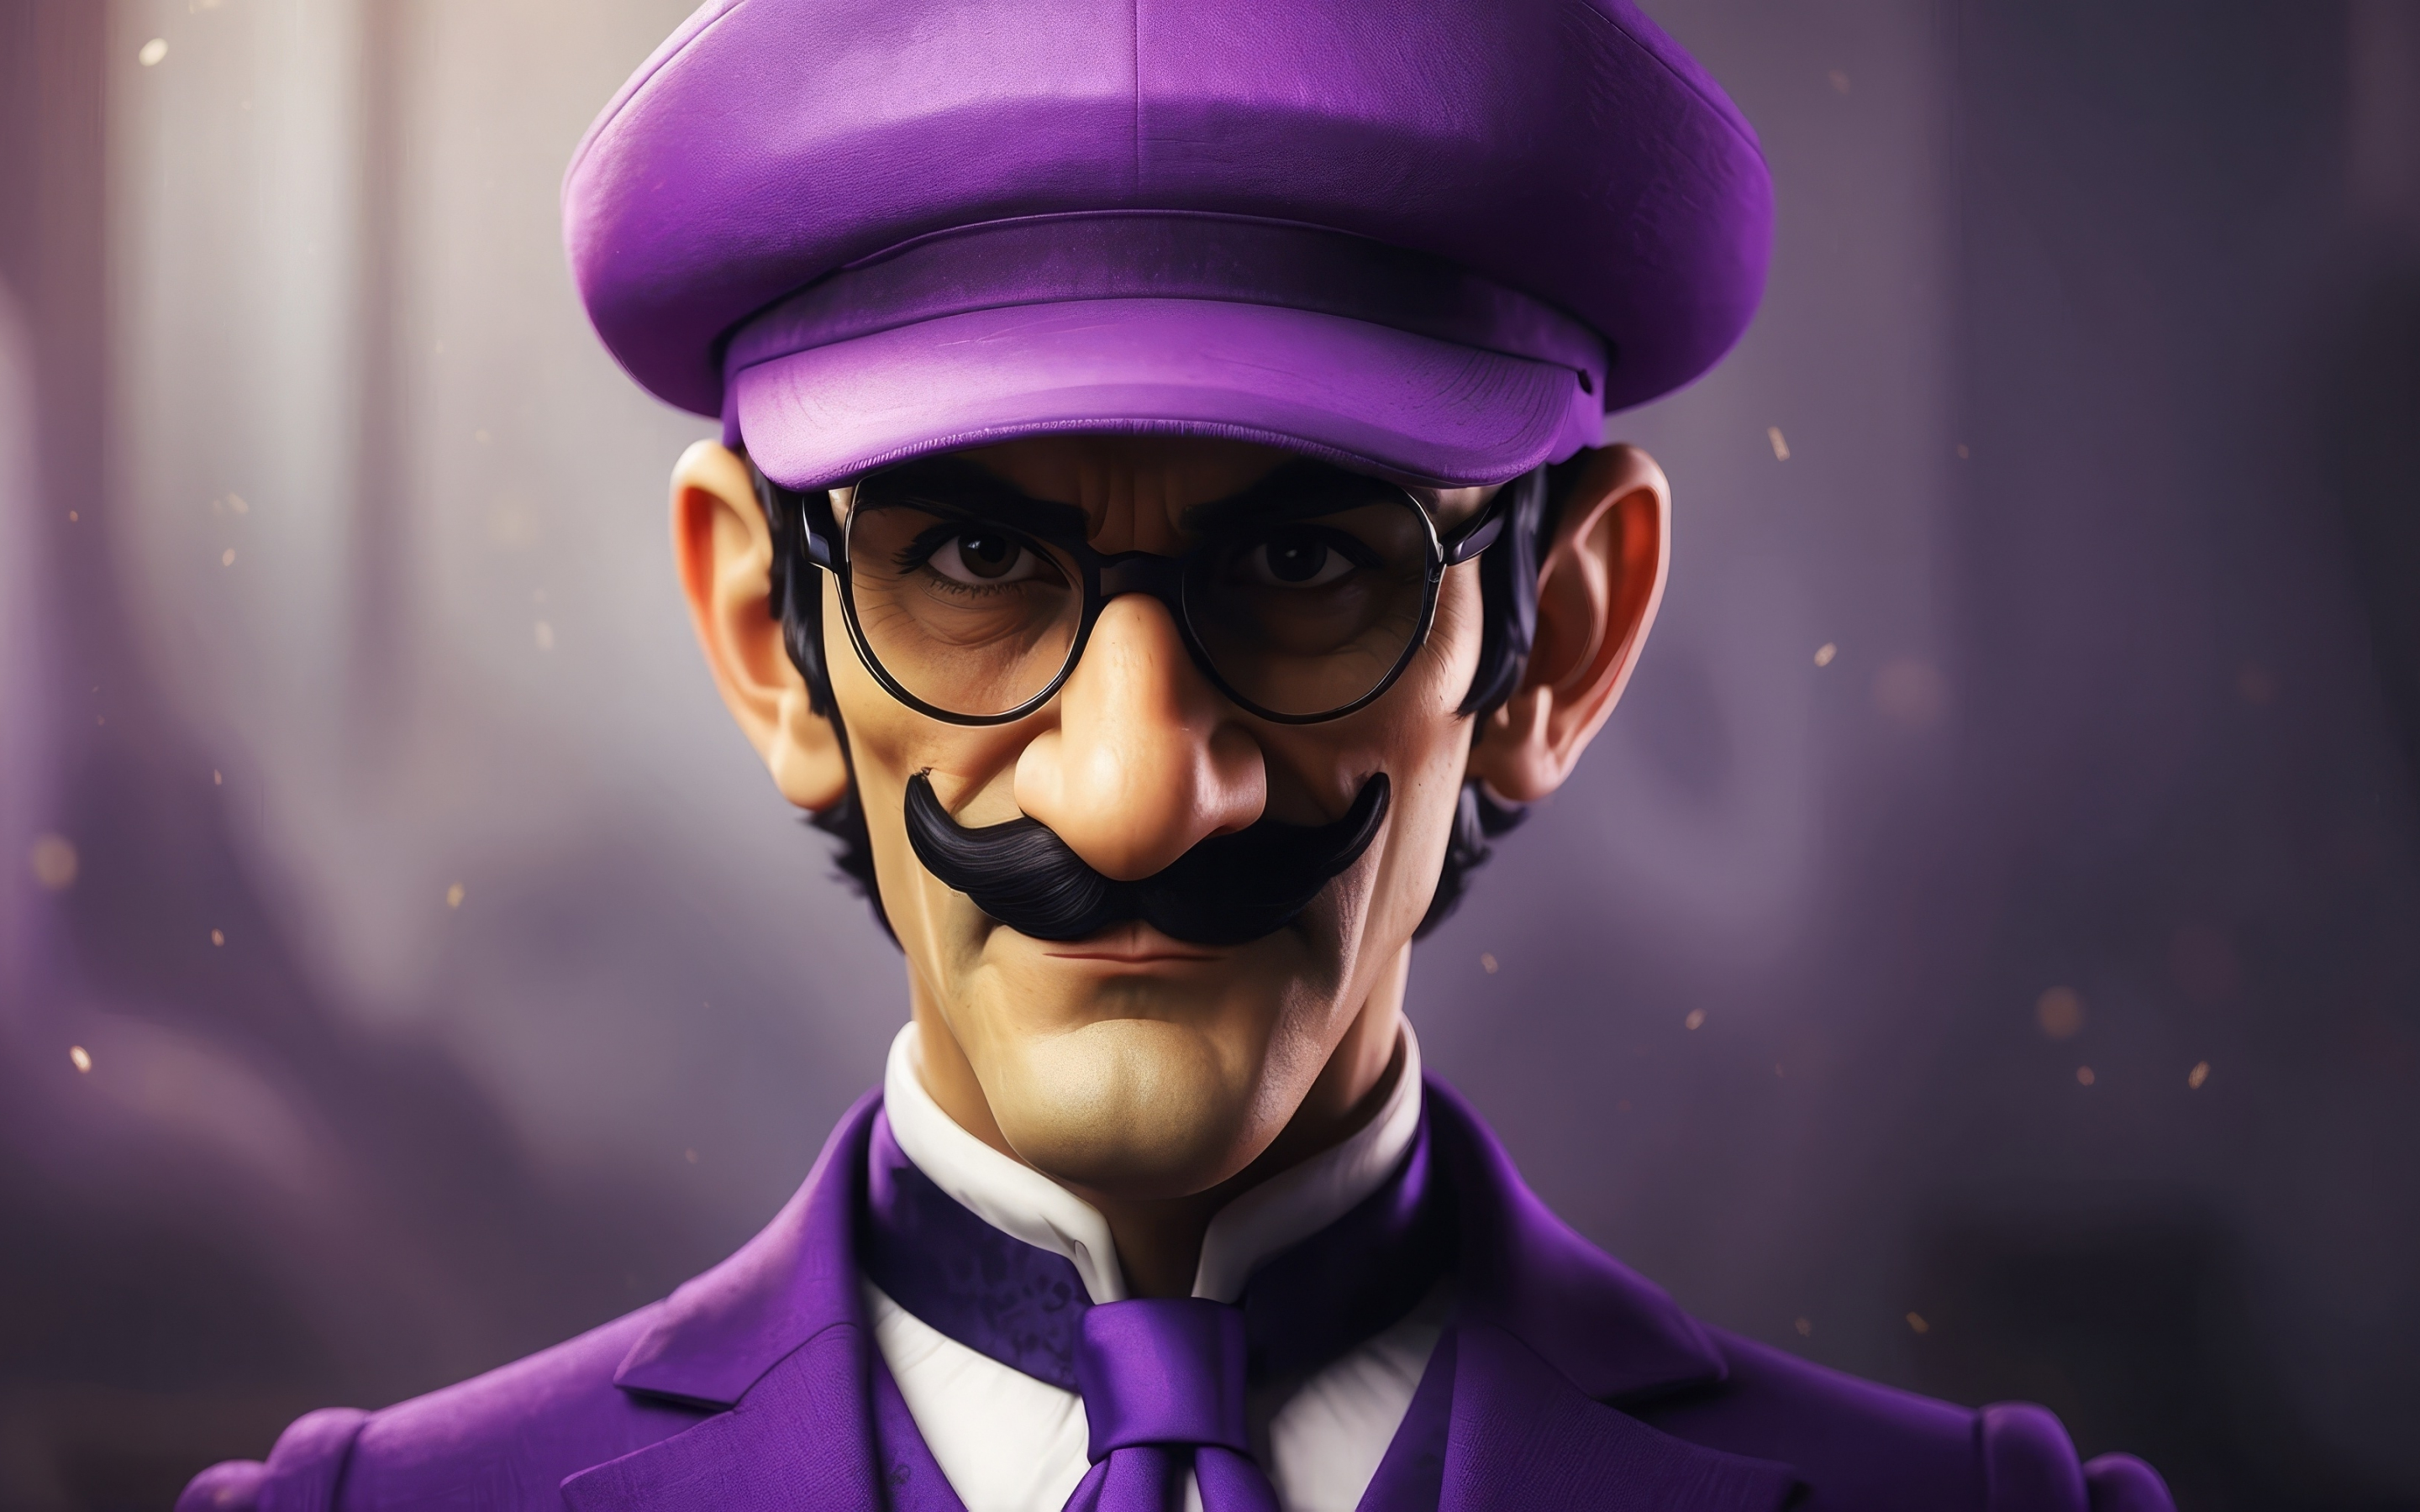 Mario's violet suit, fan art, 2880x1800 wallpaper